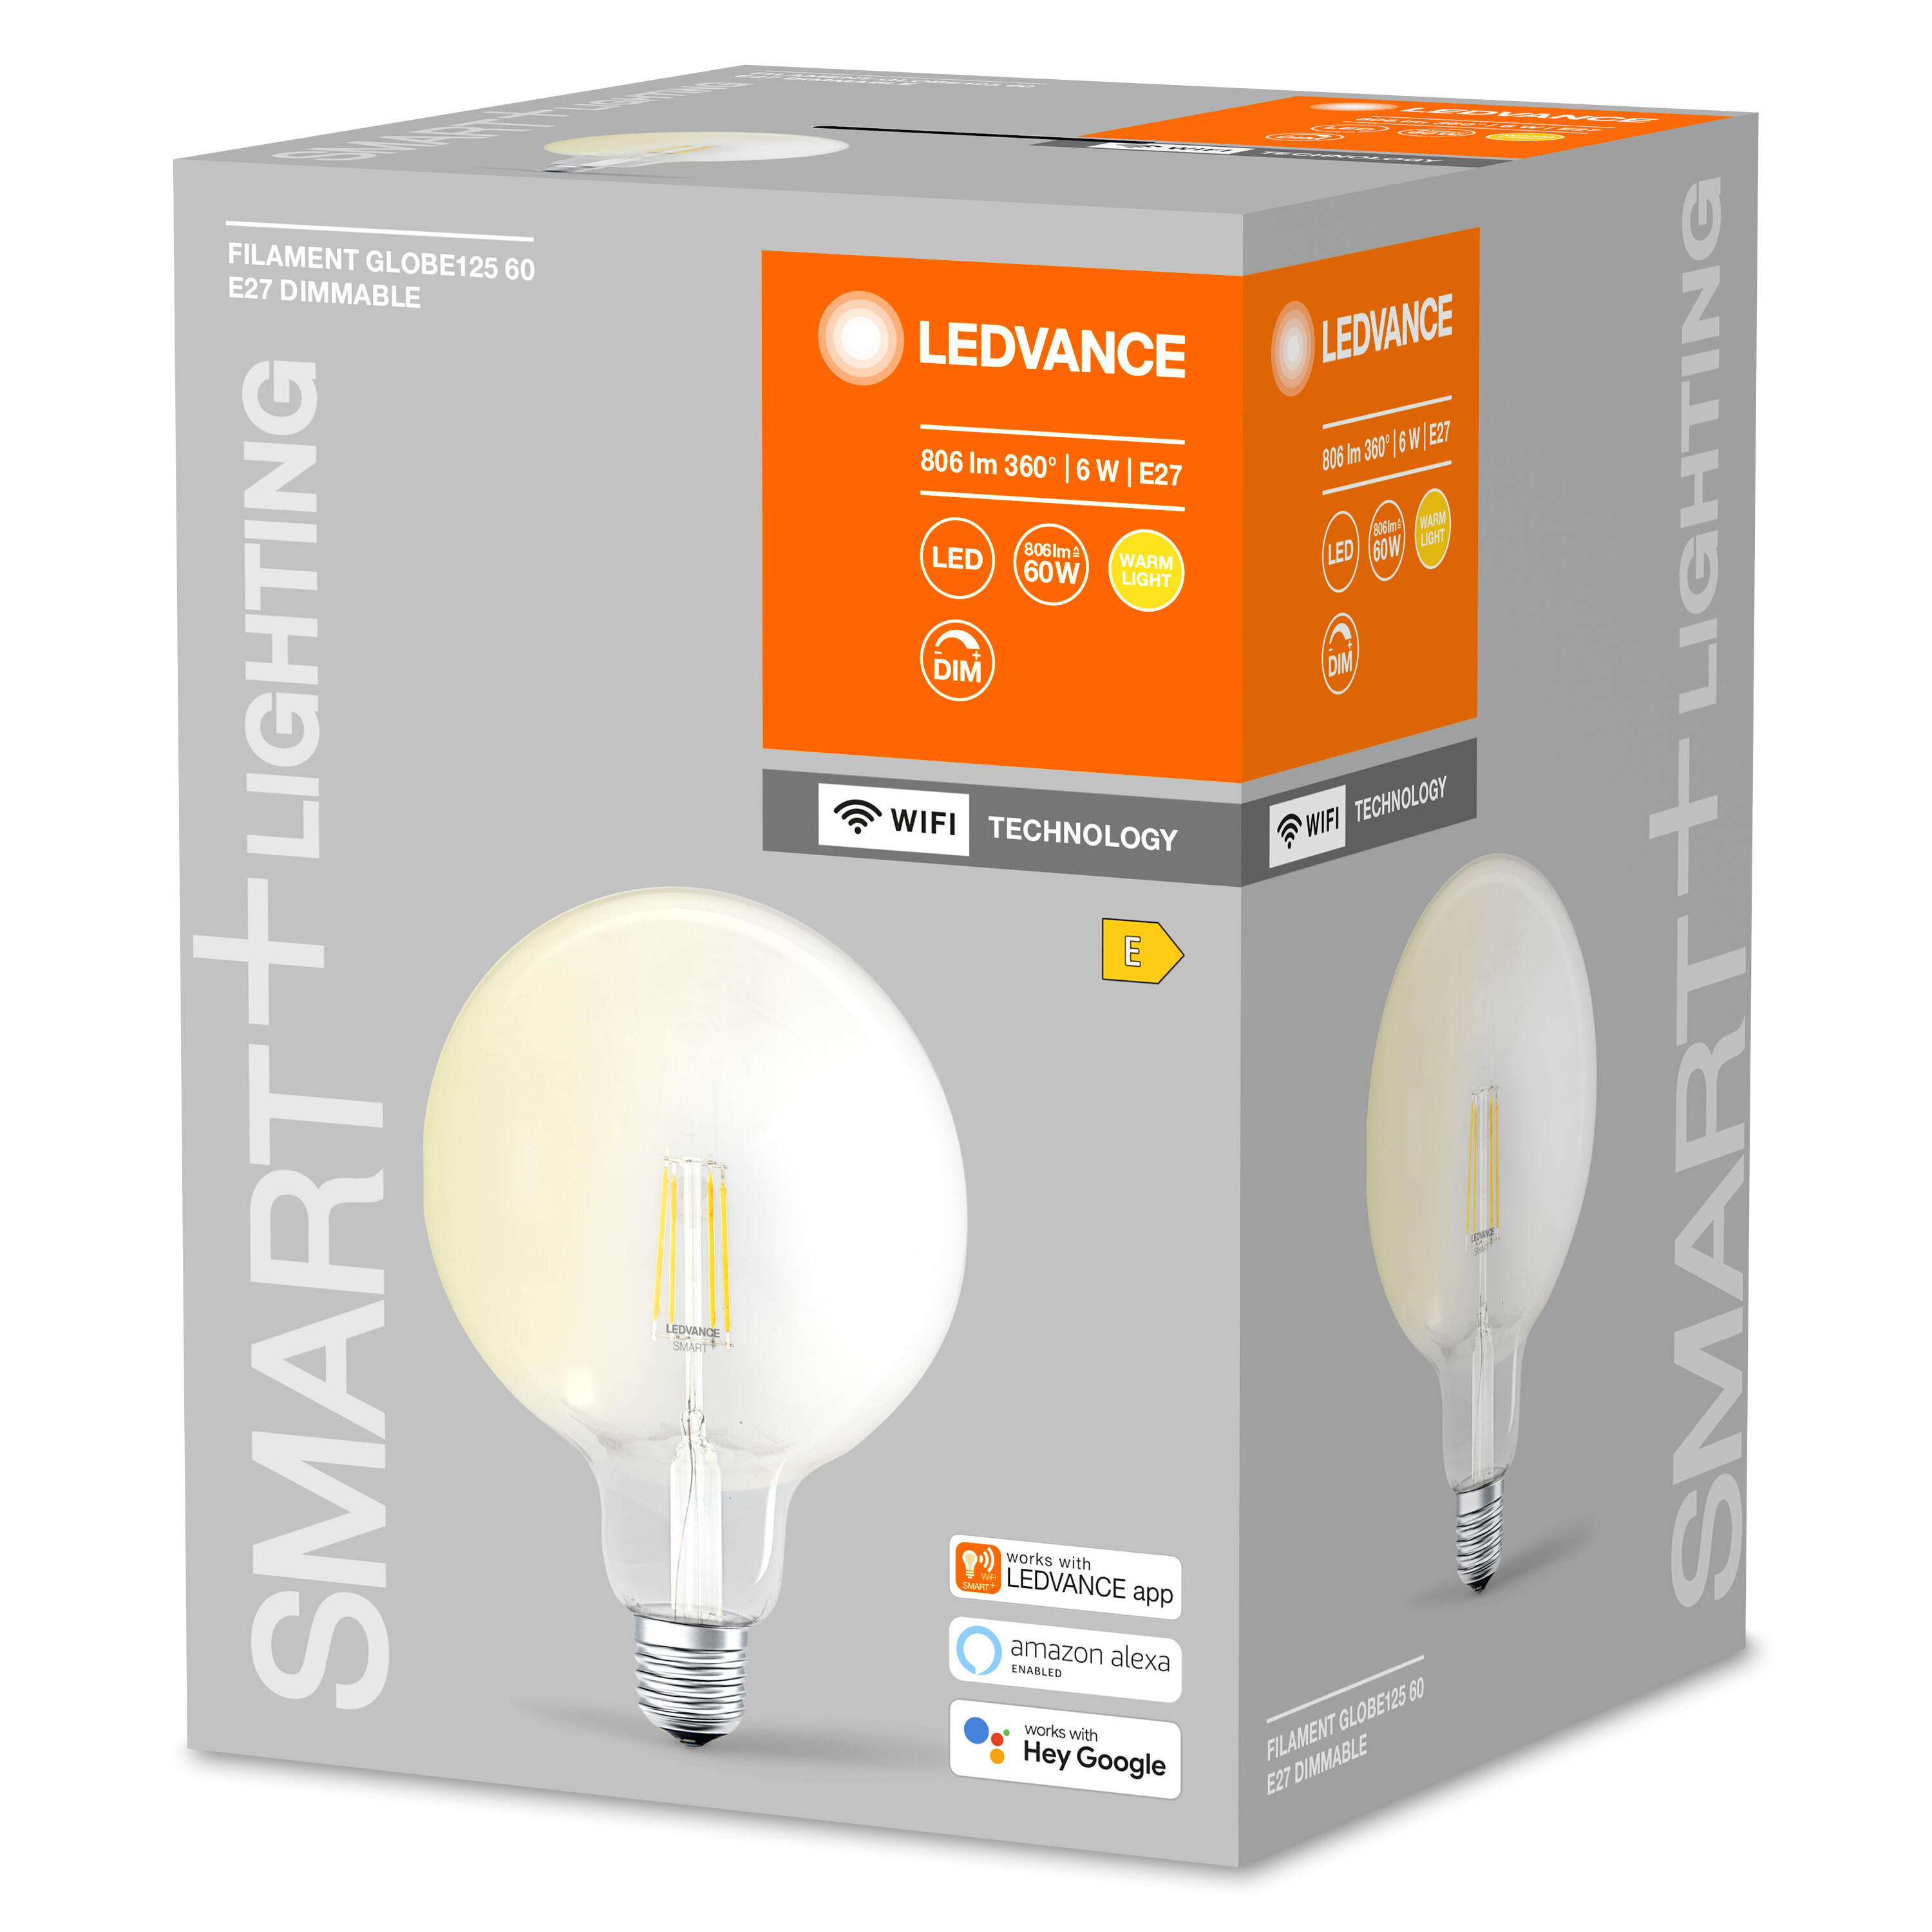 LEDVANCE SMART+ LED Dimmable Warmweiß Globe Lampe Filament